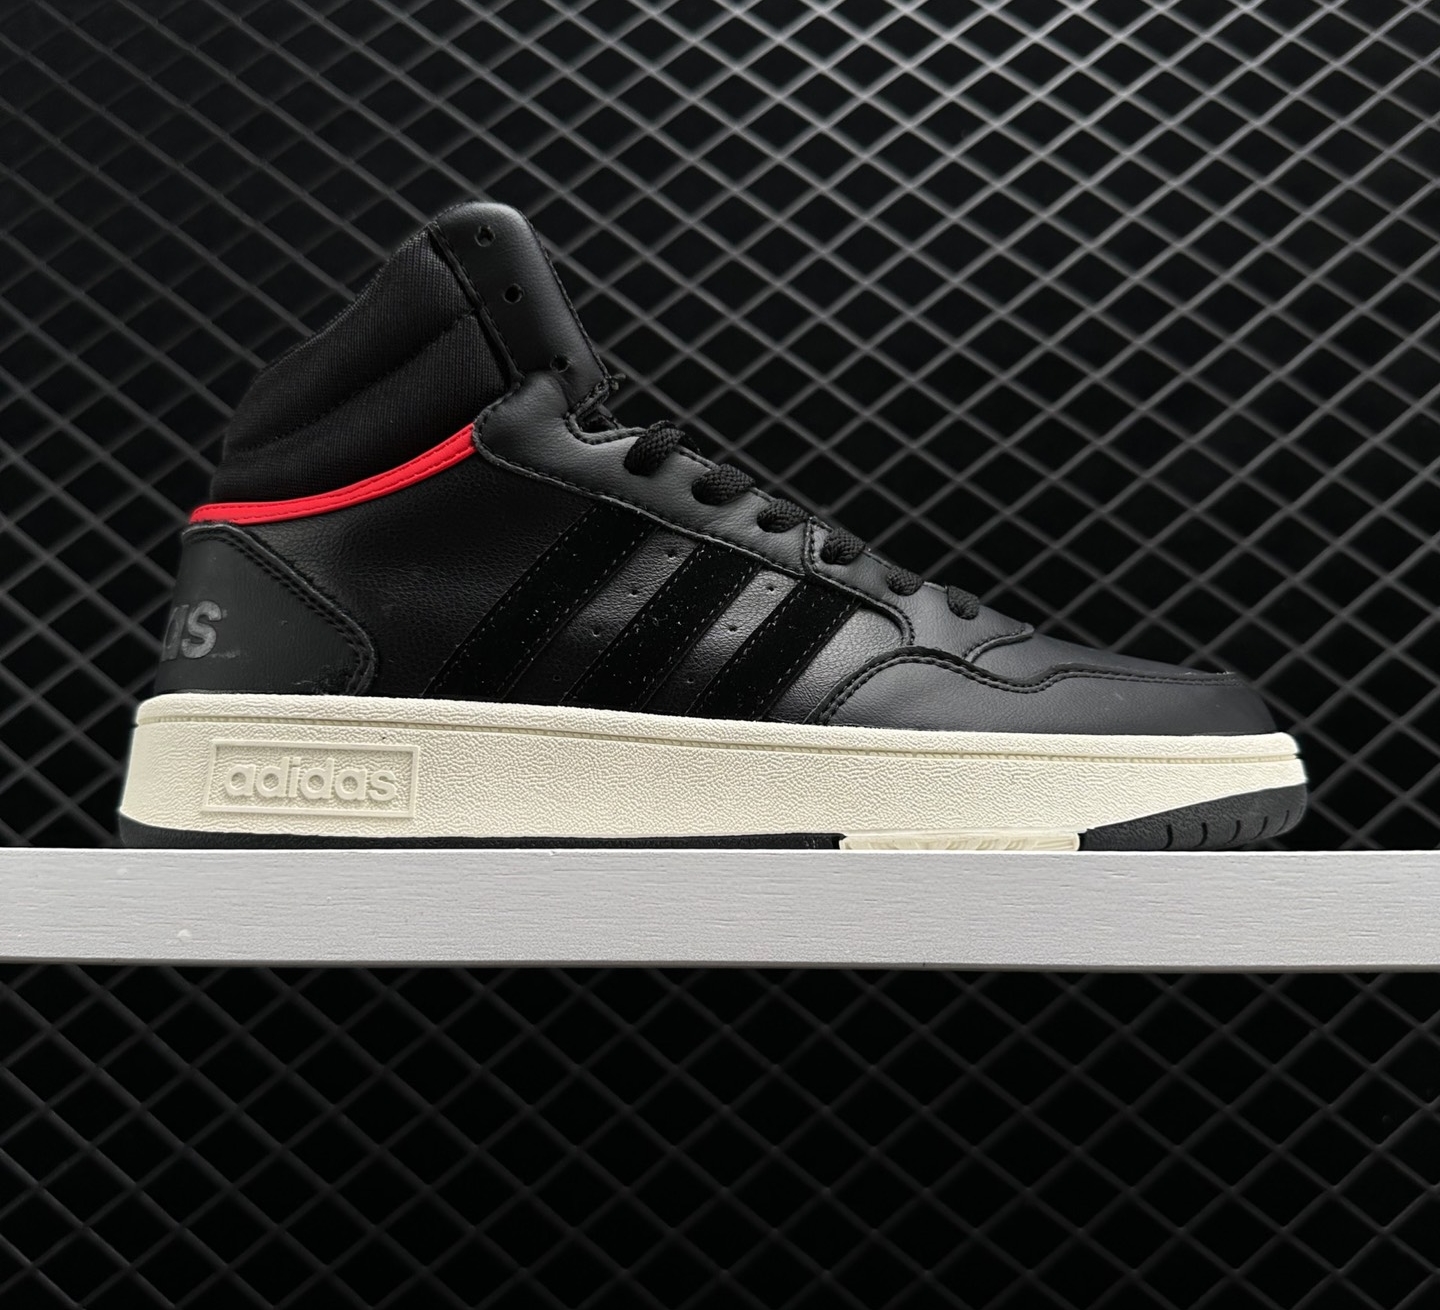 Adidas Hoops 3.1 Mid 'BLACK VIVID RED' - Premium Athletic Sneakers